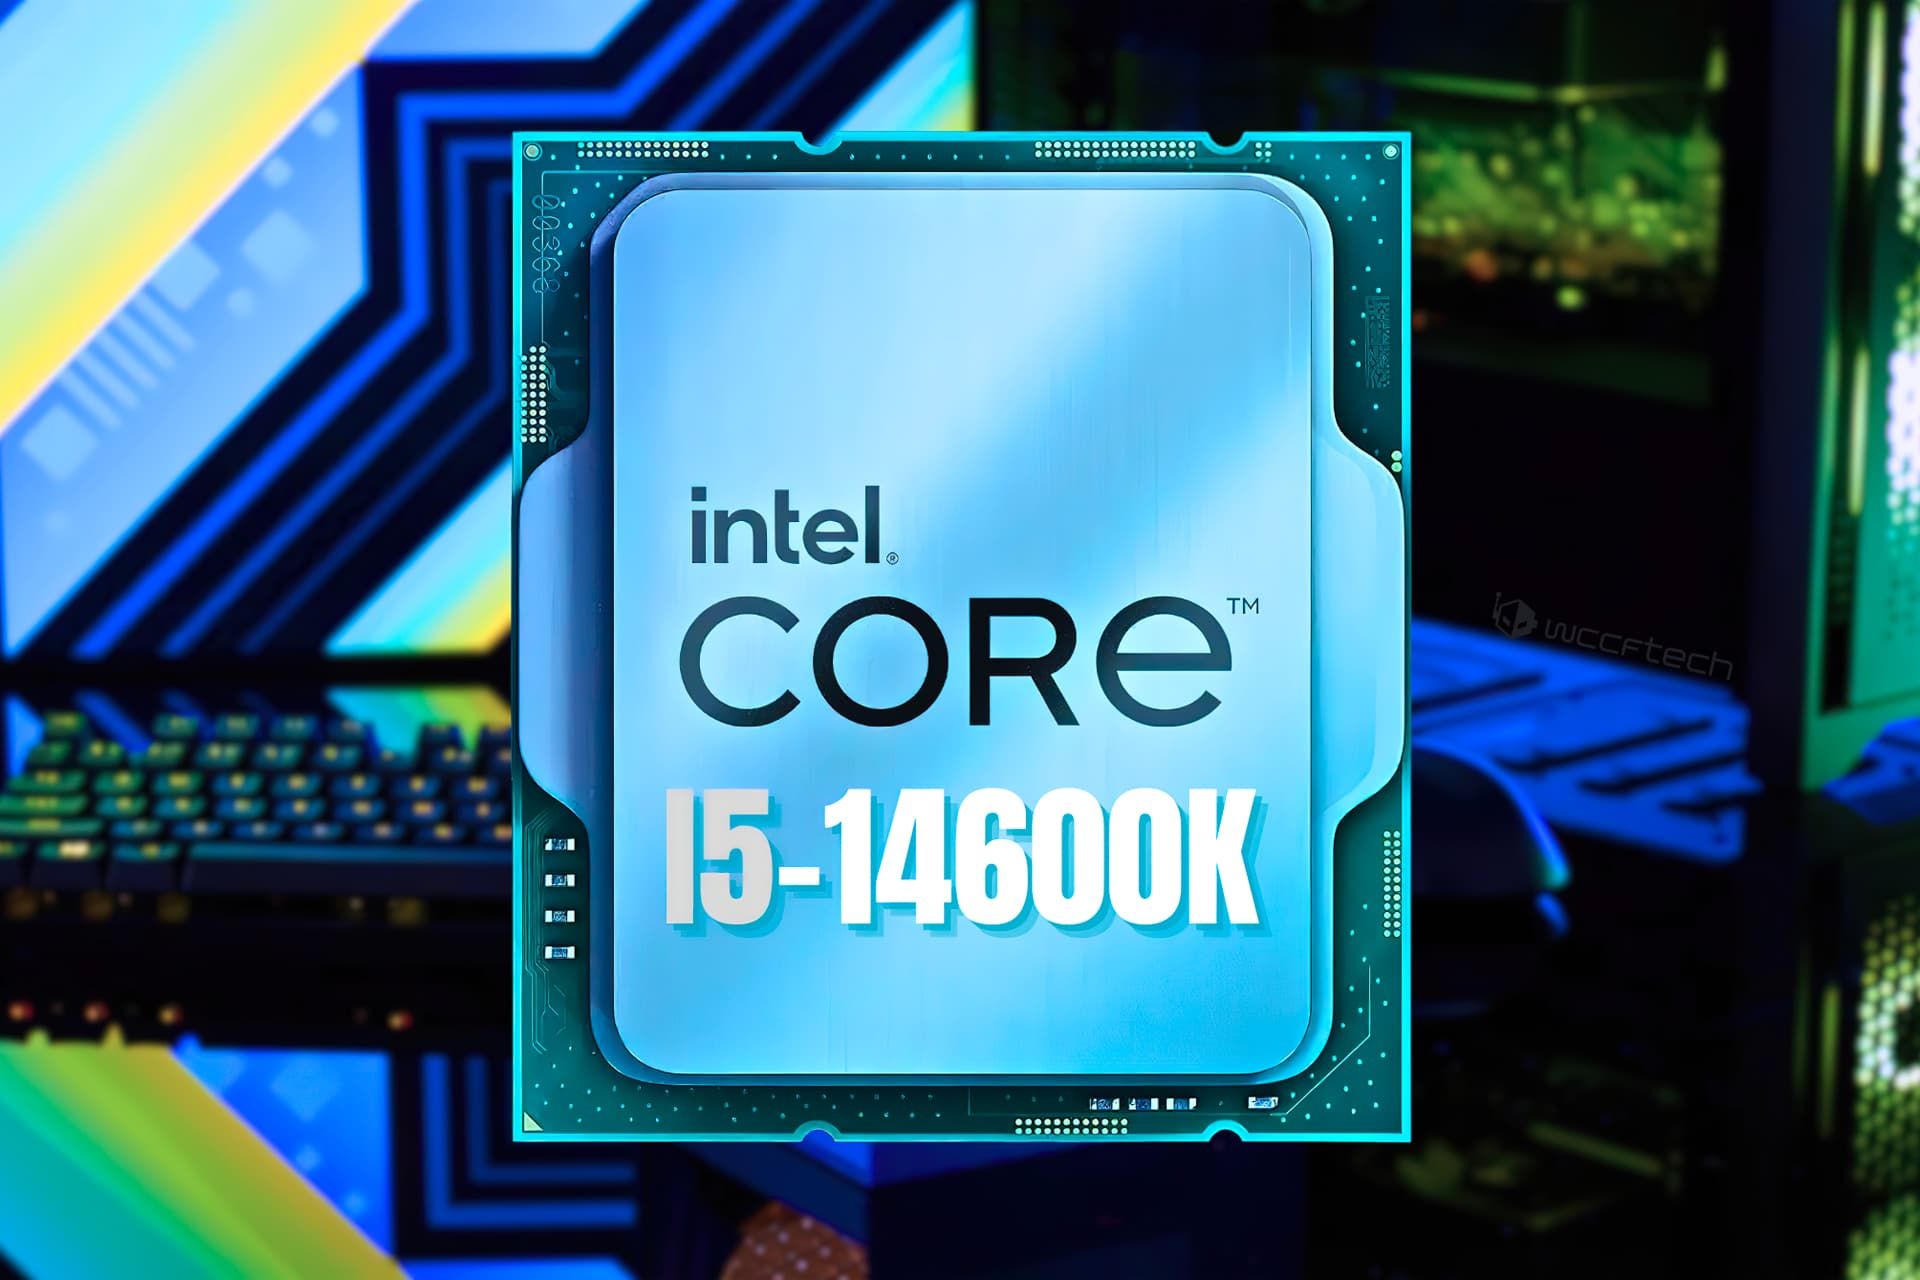 پردازنده Intel 14600K از نمای جلو رندر غیررسمی